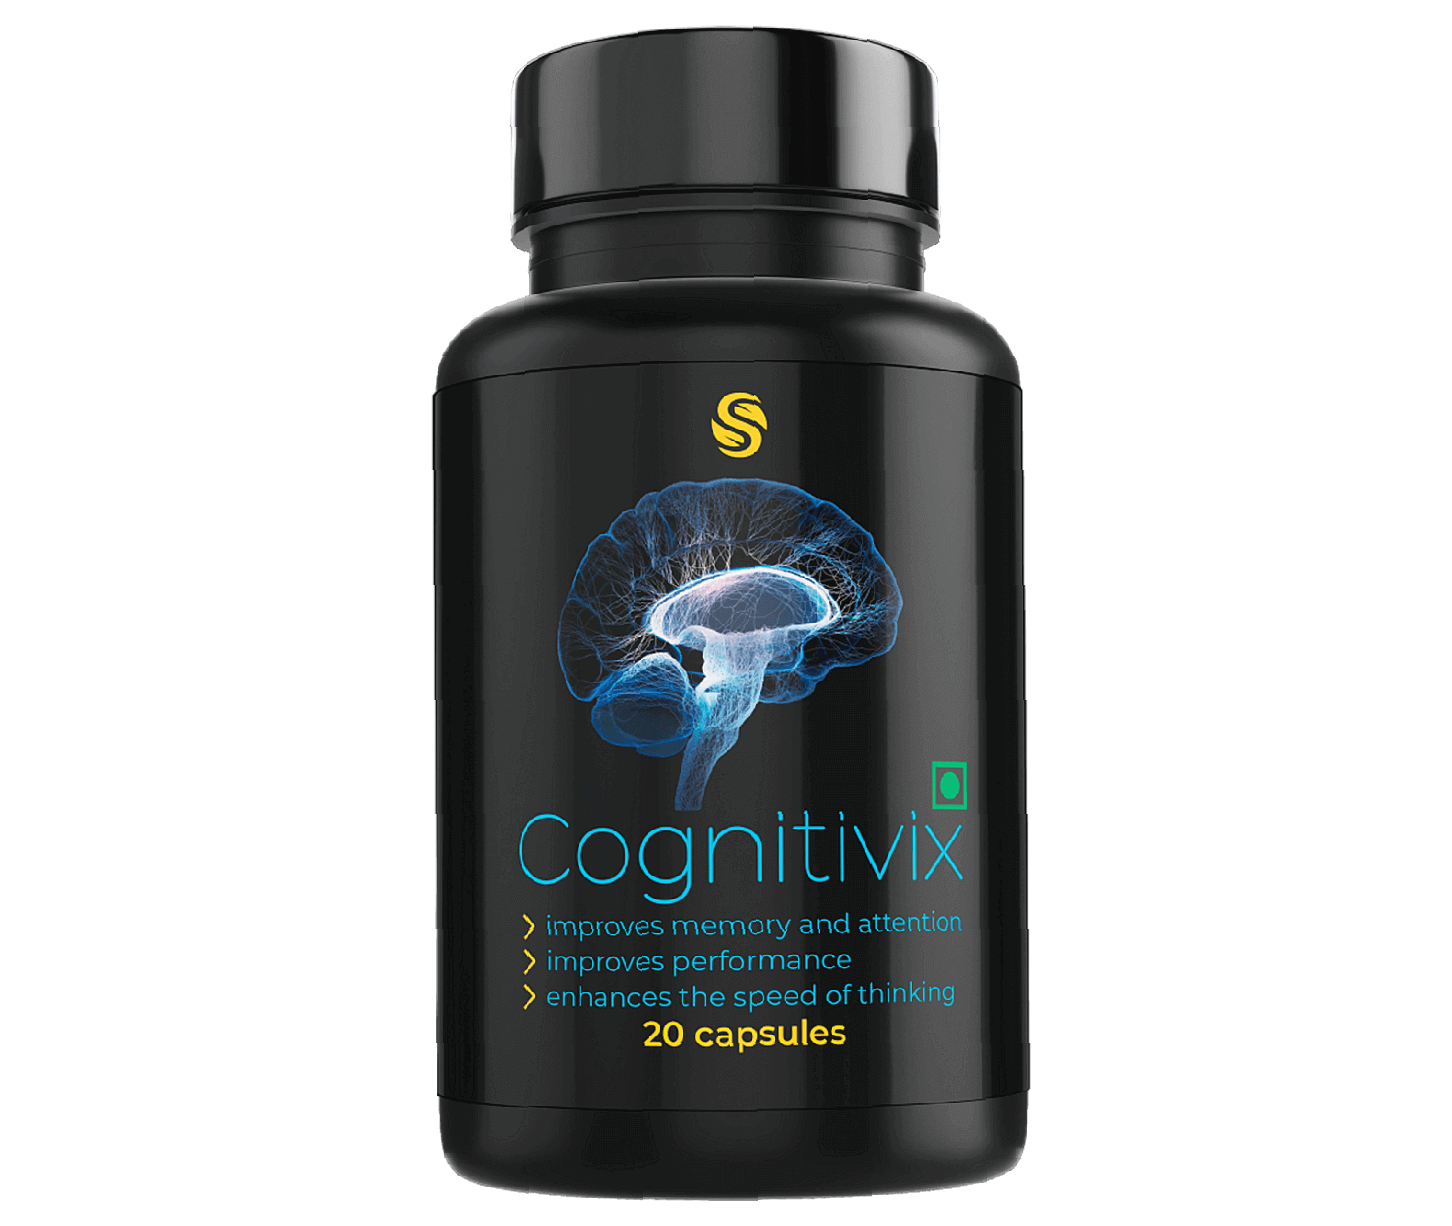 Cognitivix - what is it